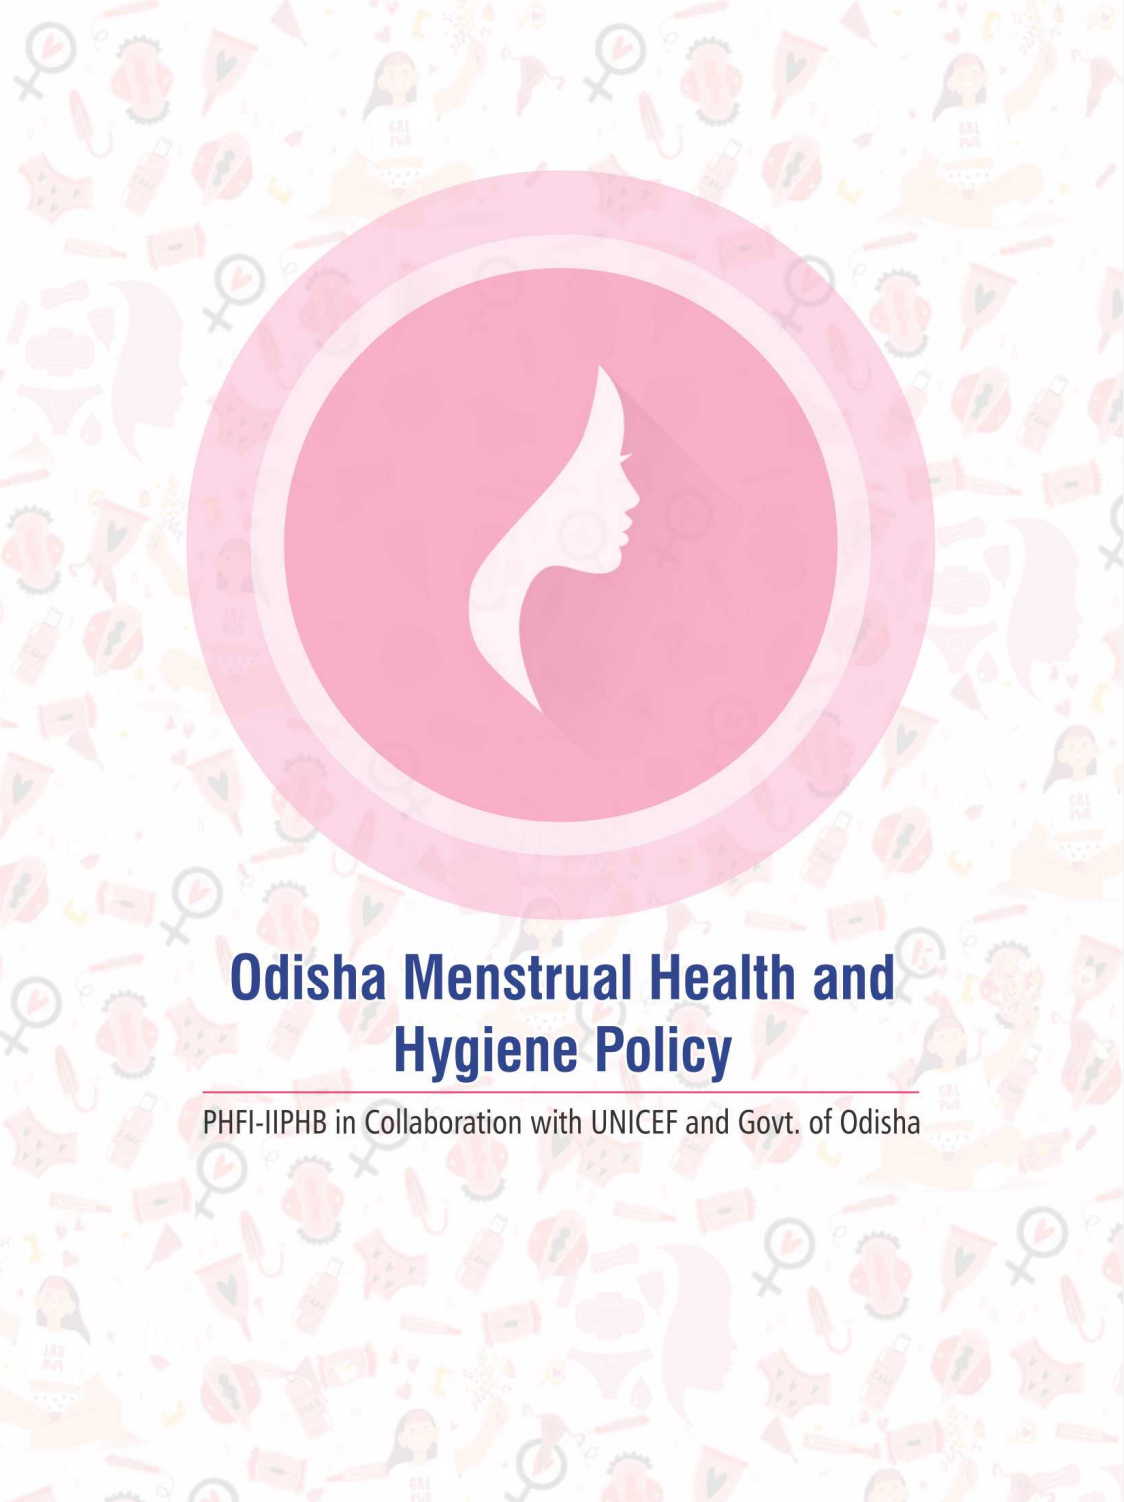 Odisha Menstrual Health and Hygiene Policy